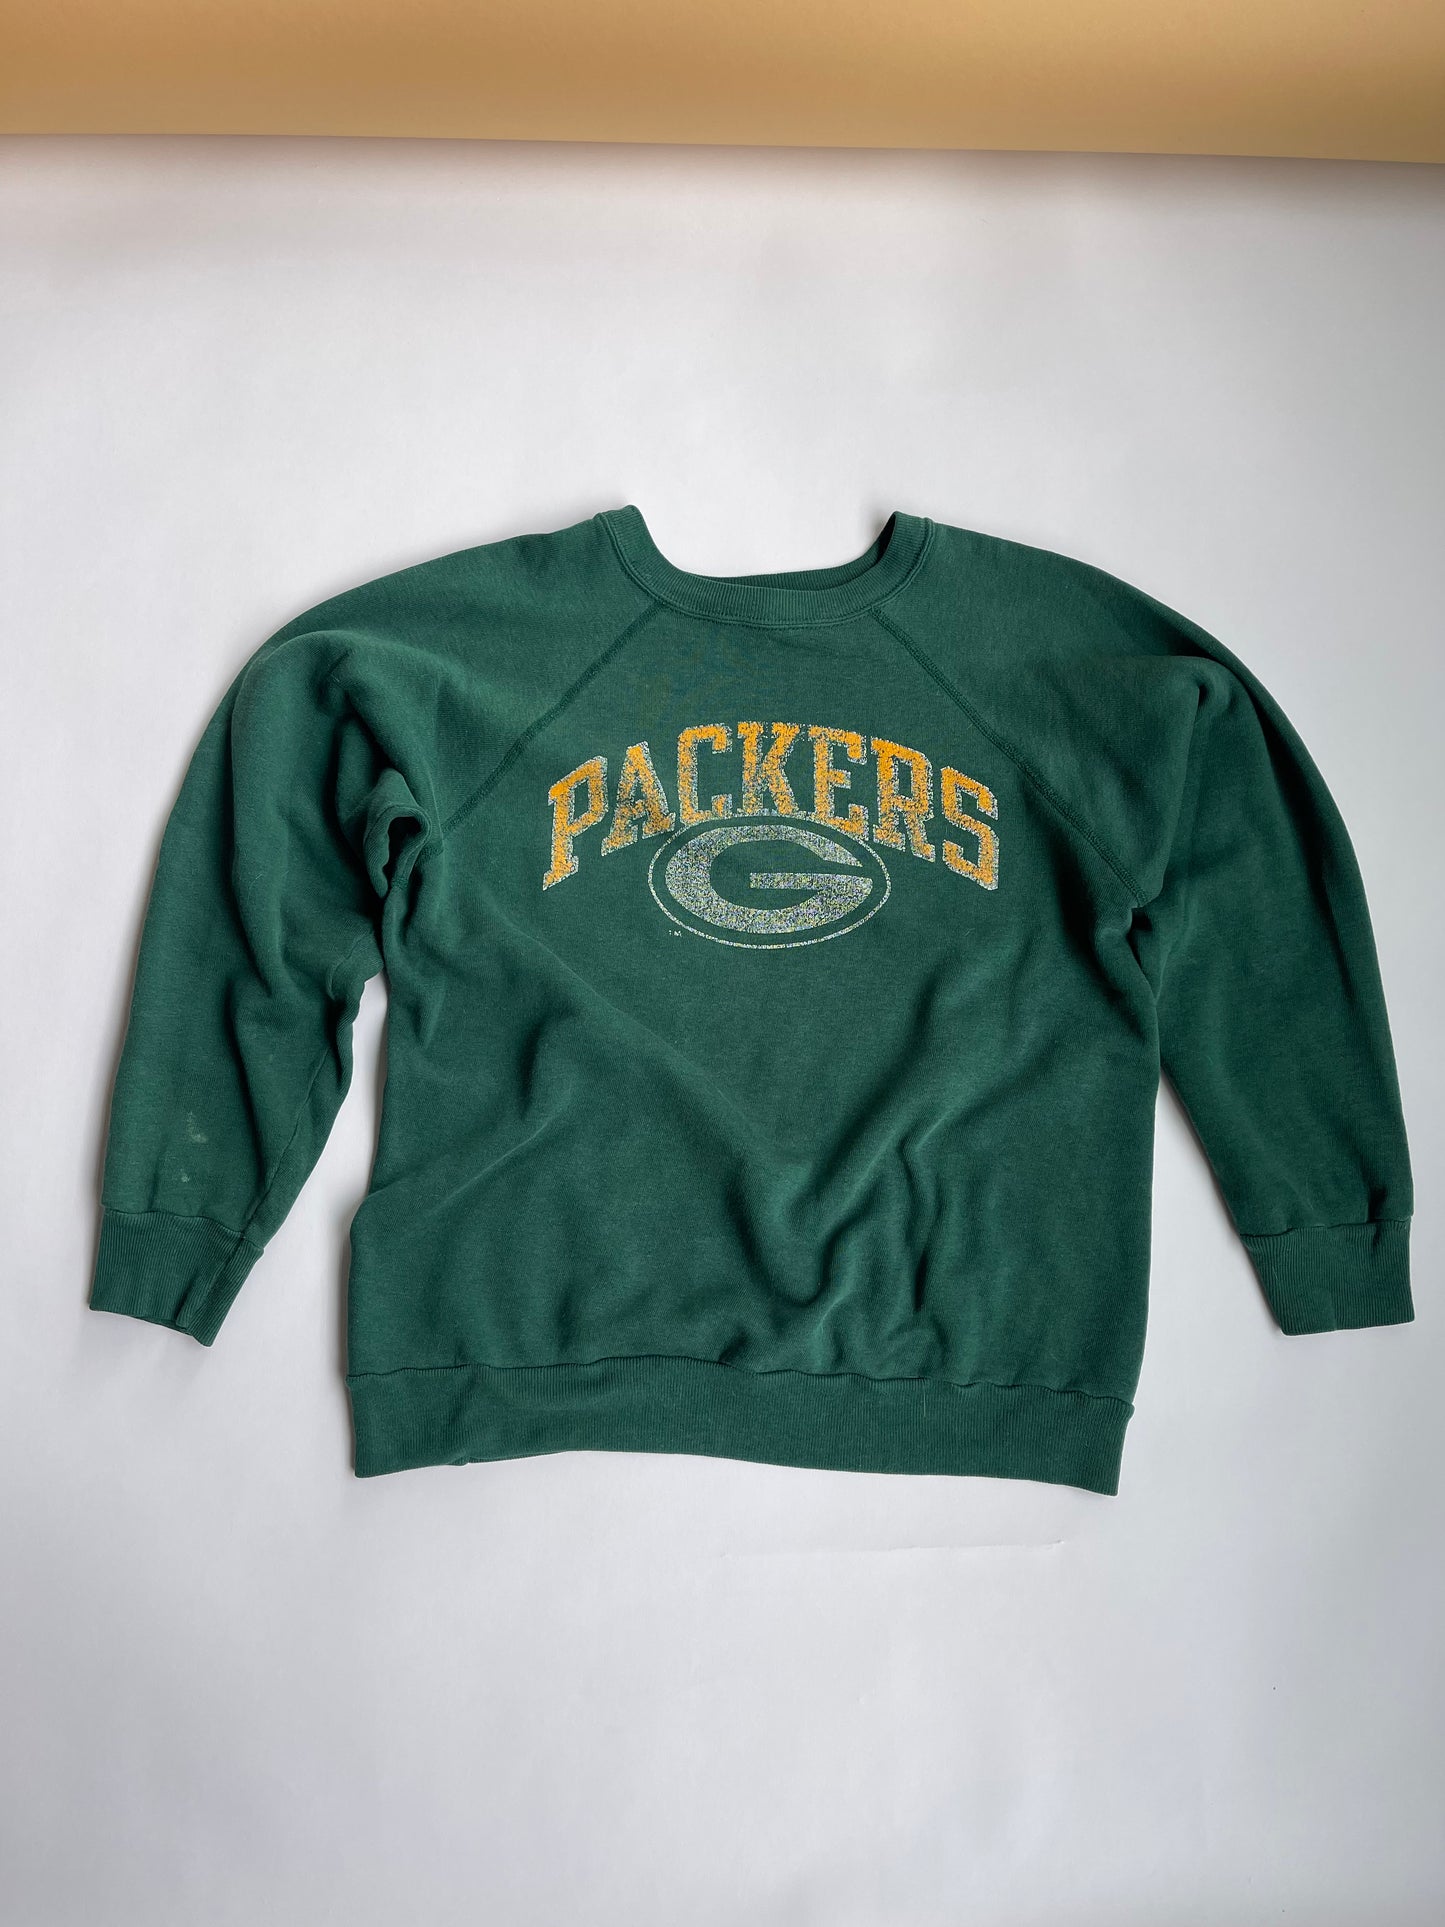 Vintage Green Bay Packers Raglan - S/M